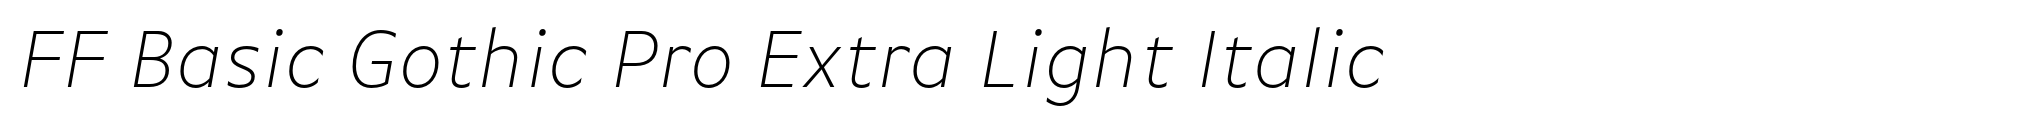 FF Basic Gothic Pro Extra Light Italic image